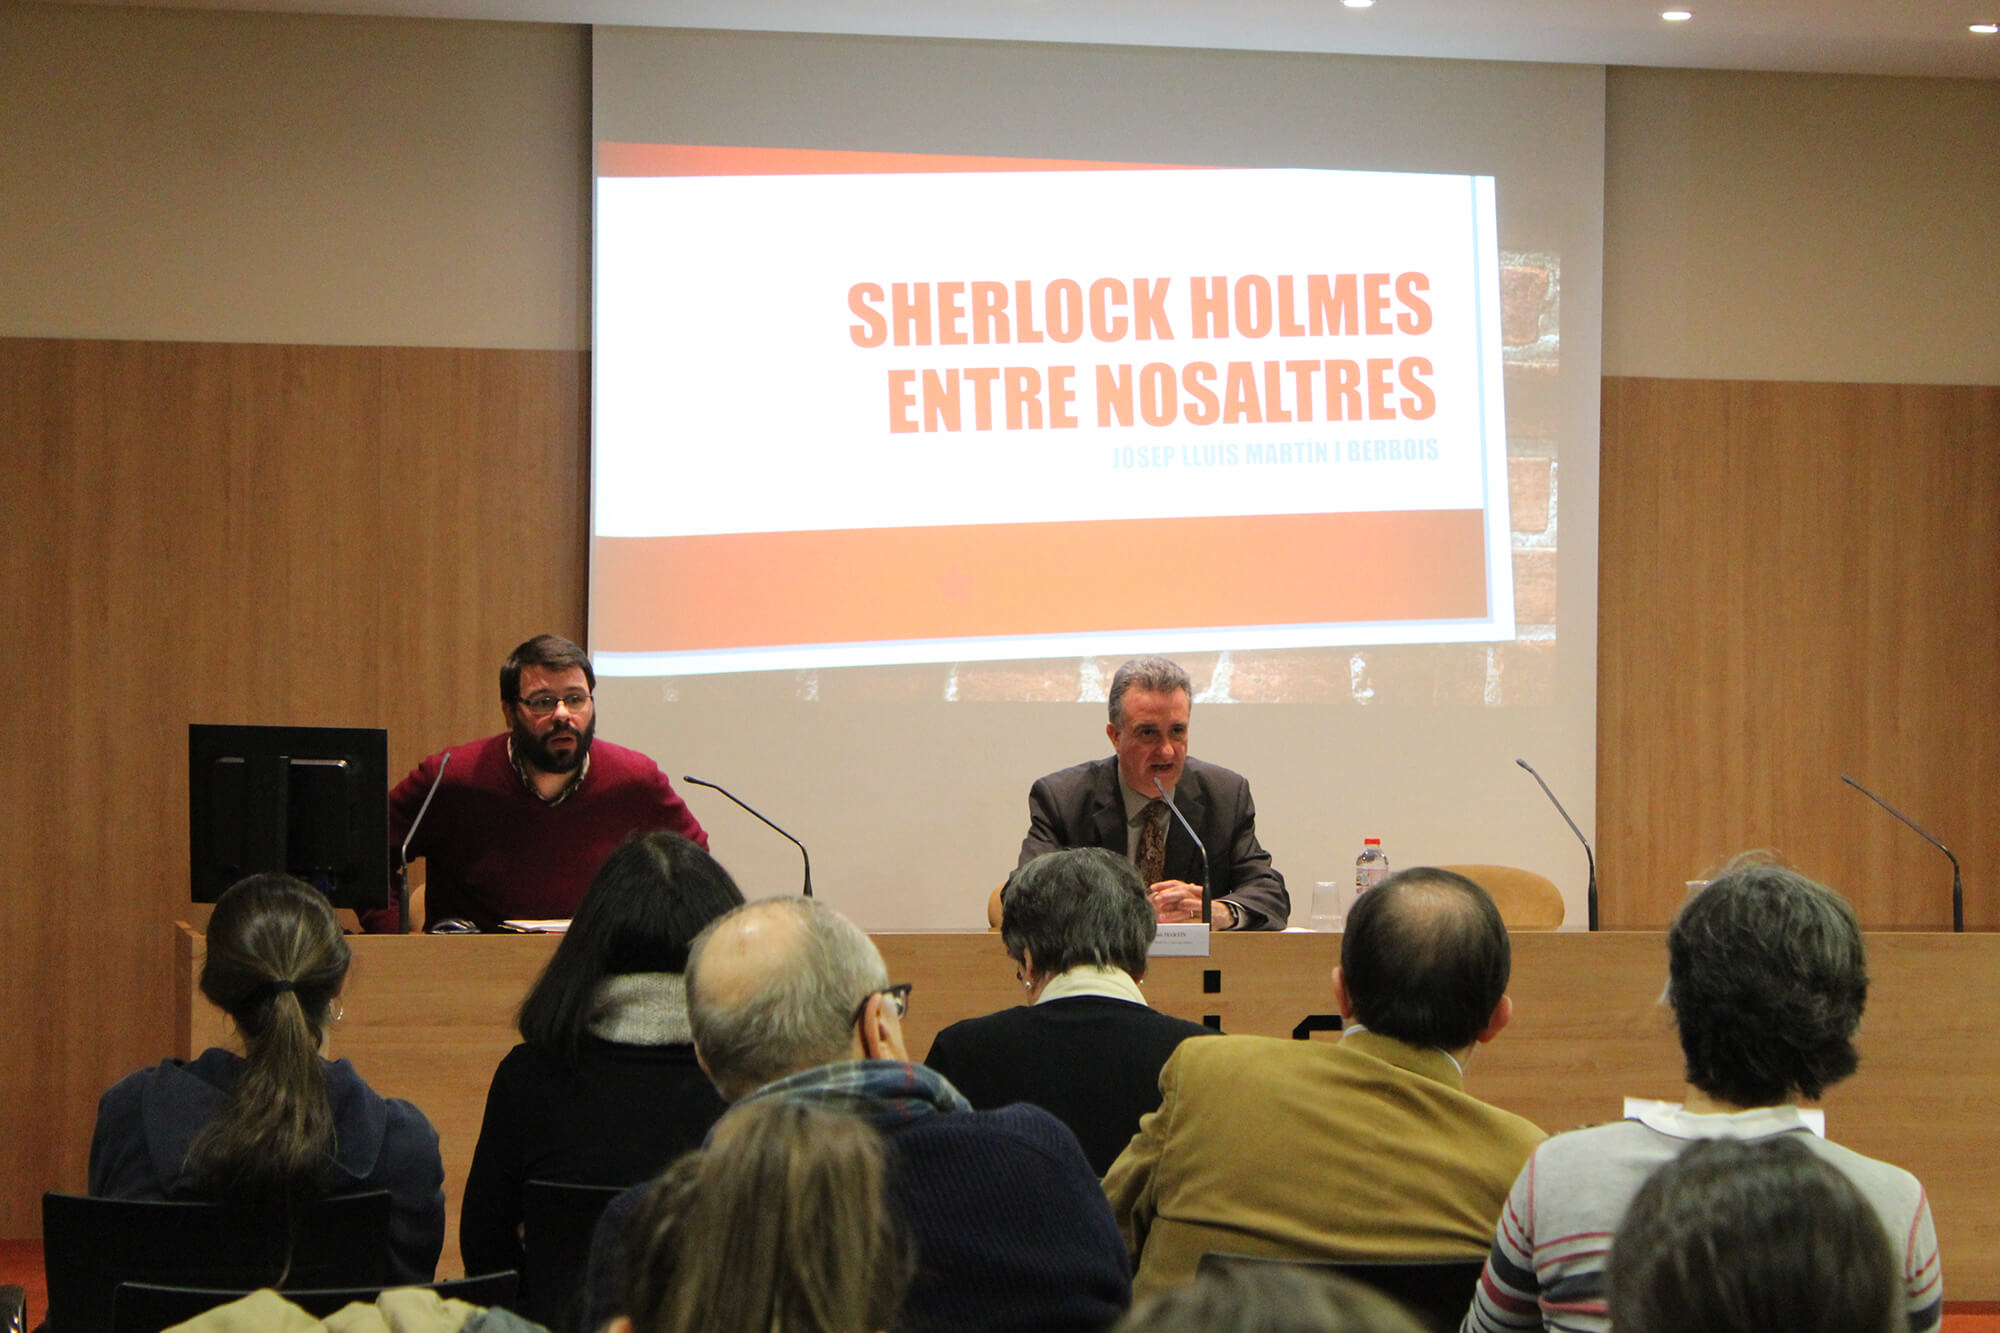 Jordi Puigdomènech, profesor de UIC Barcelona. Conferencia “La influencia del cine en la narrativa de Carlos Pujol: adaptaciones de Sherlock Holmes”. UIC Barcelona, 30 de enero de 2019.